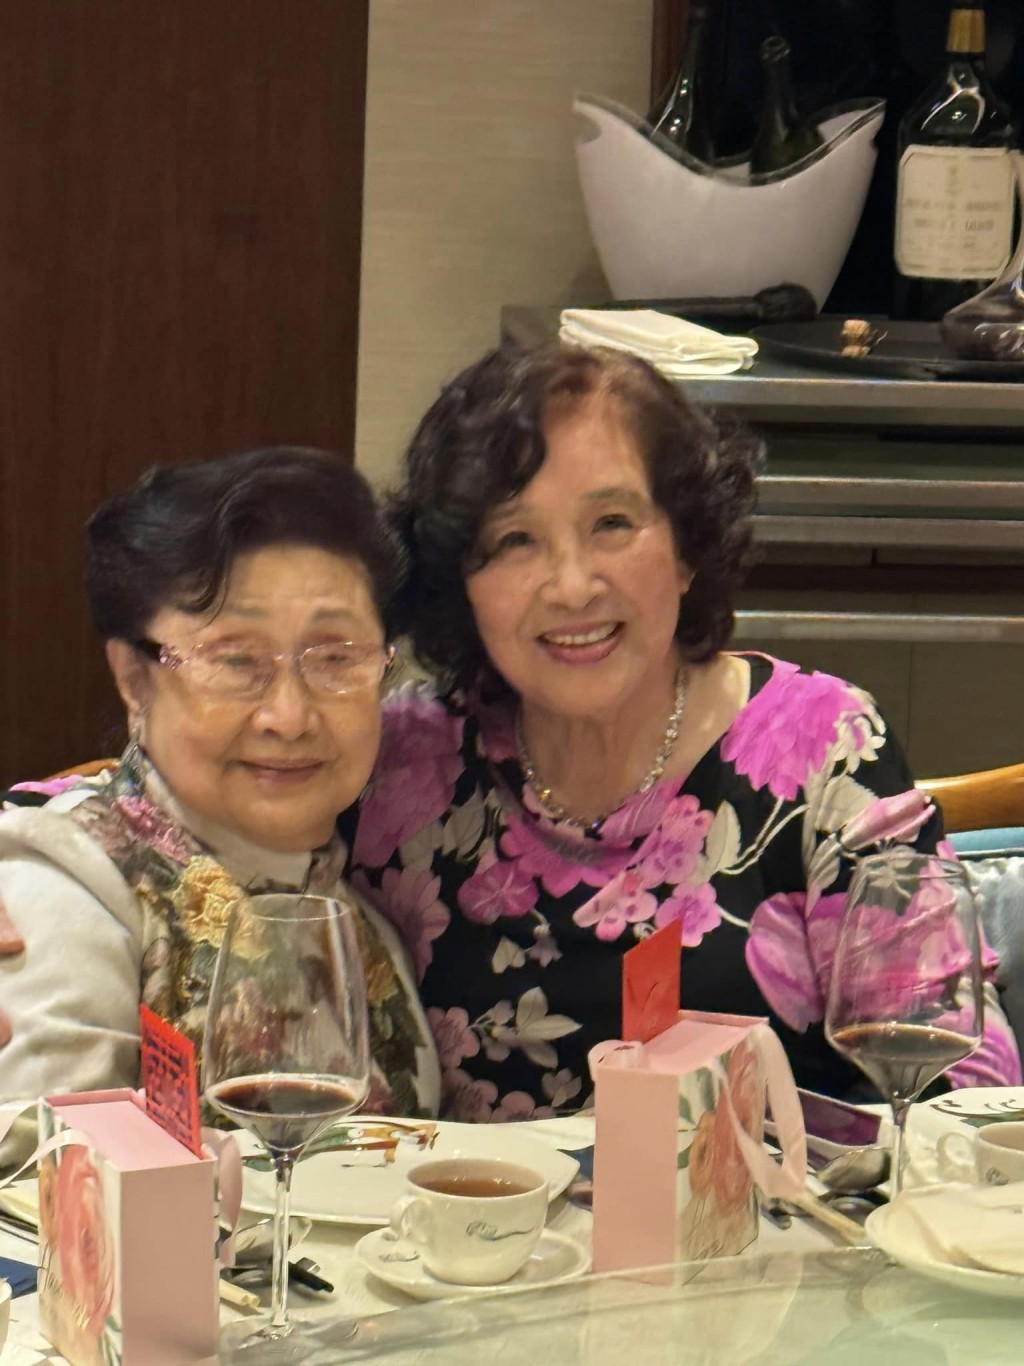 不少网民都大赞白雪仙（左）和寿星李蔡美灵女士都保养得宜，完全不像年近百岁的老妇人。